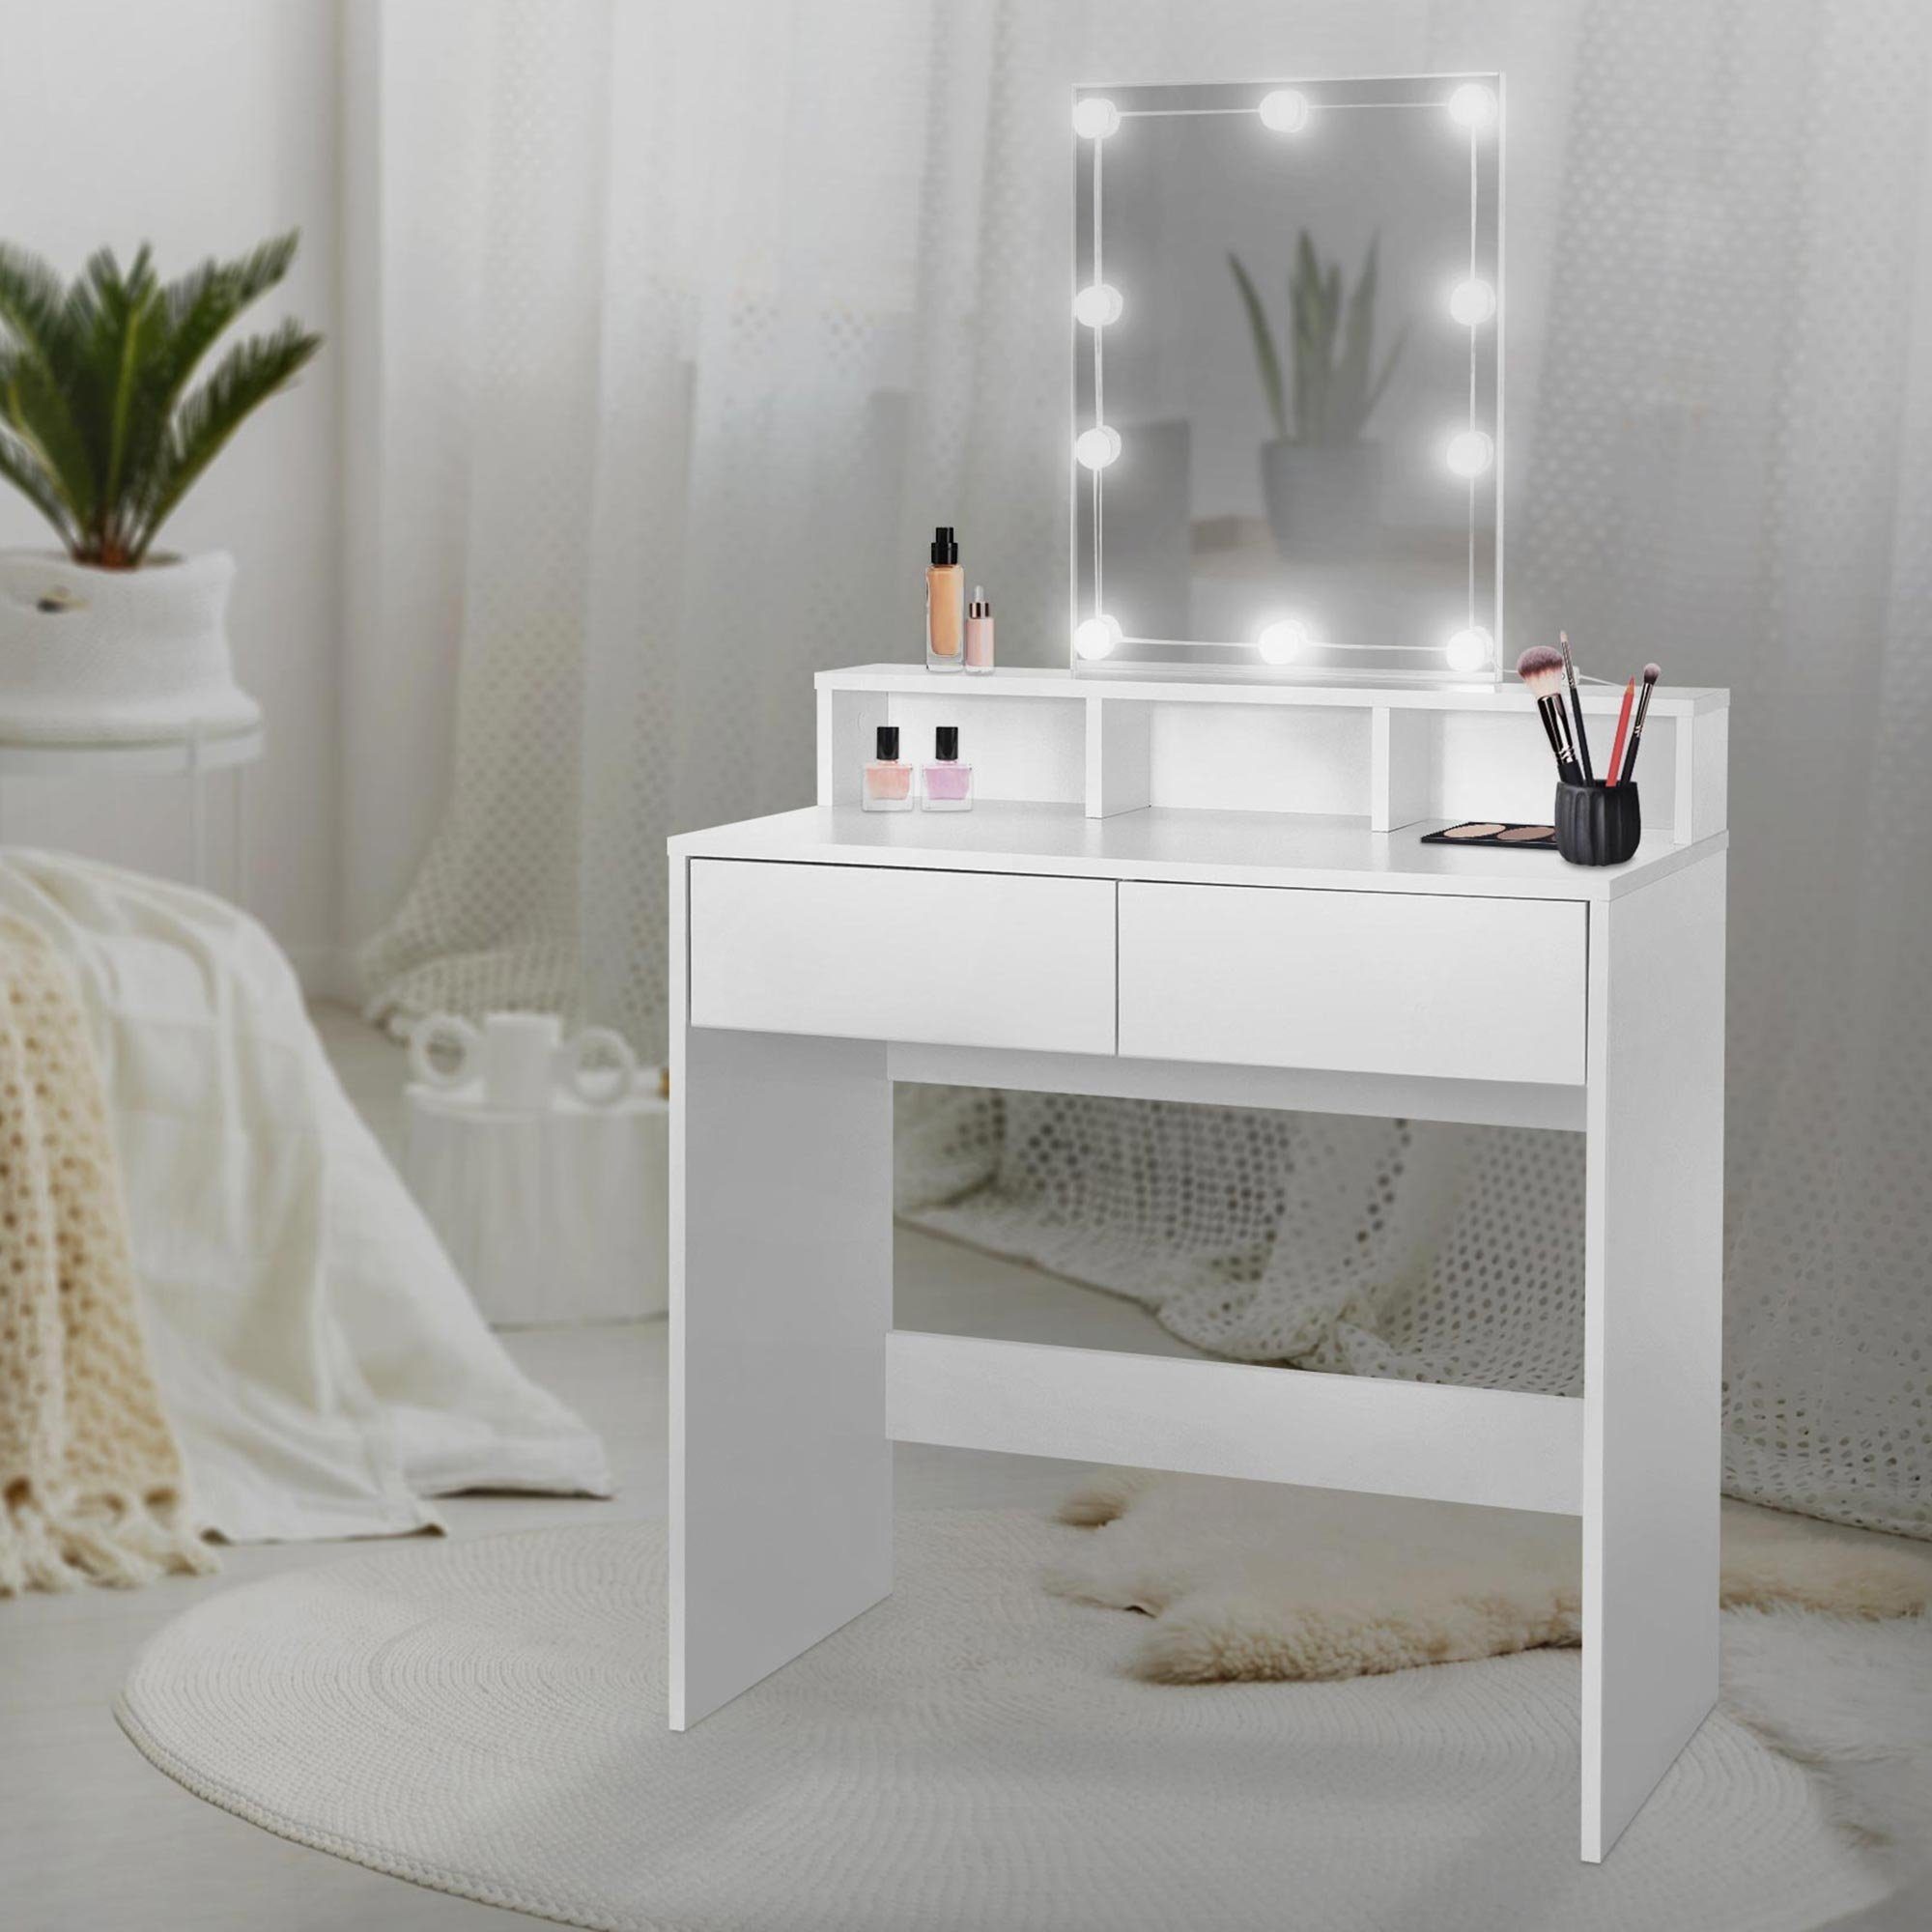 ML-DESIGN Schminktisch Frisiertisch Frisierkommode Schminkkommode Make-up  Tisch Kosmetiktisch, LED-Beleuchtung mit Spiegel und 2 Schubladen  80x40x140cm Weiß modern